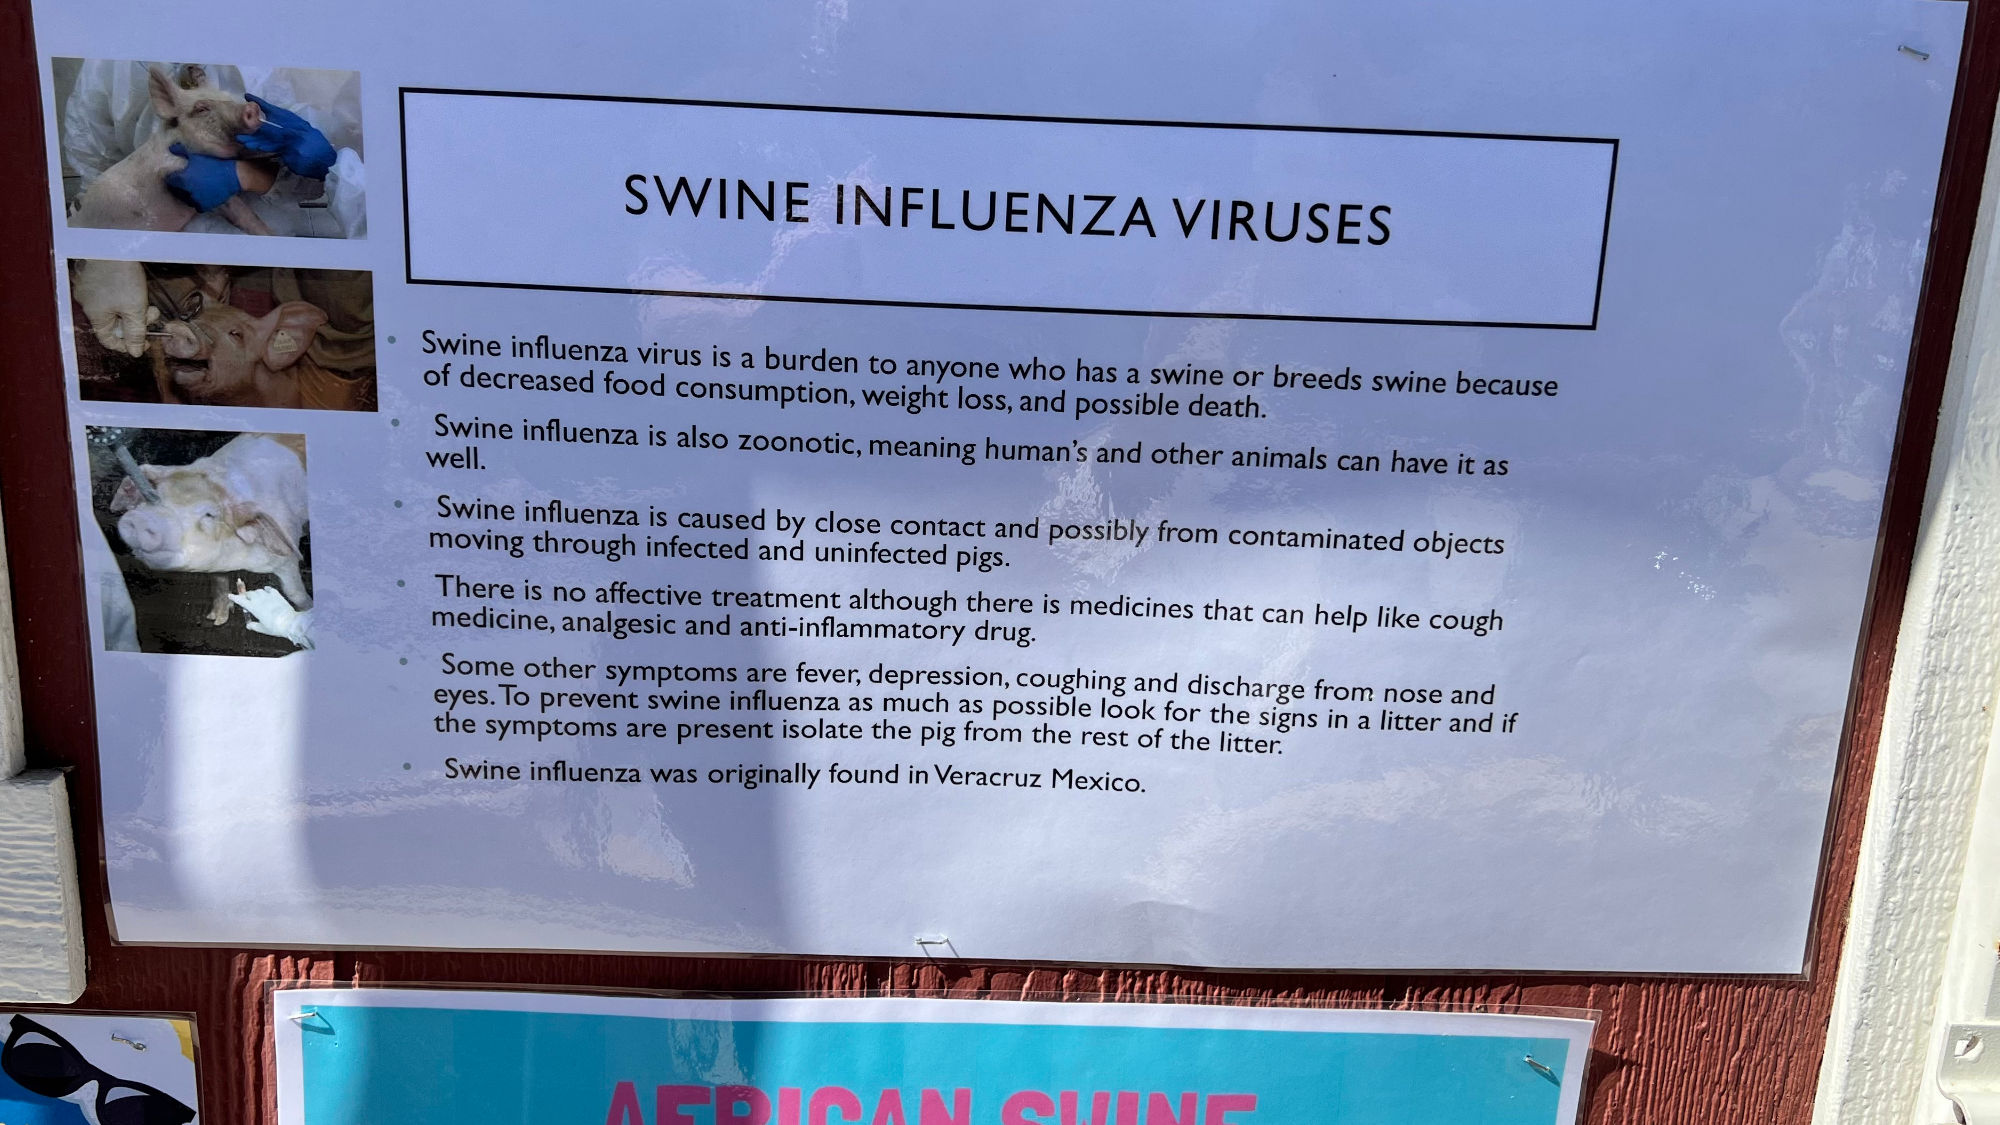 Swine Influenza Viruses